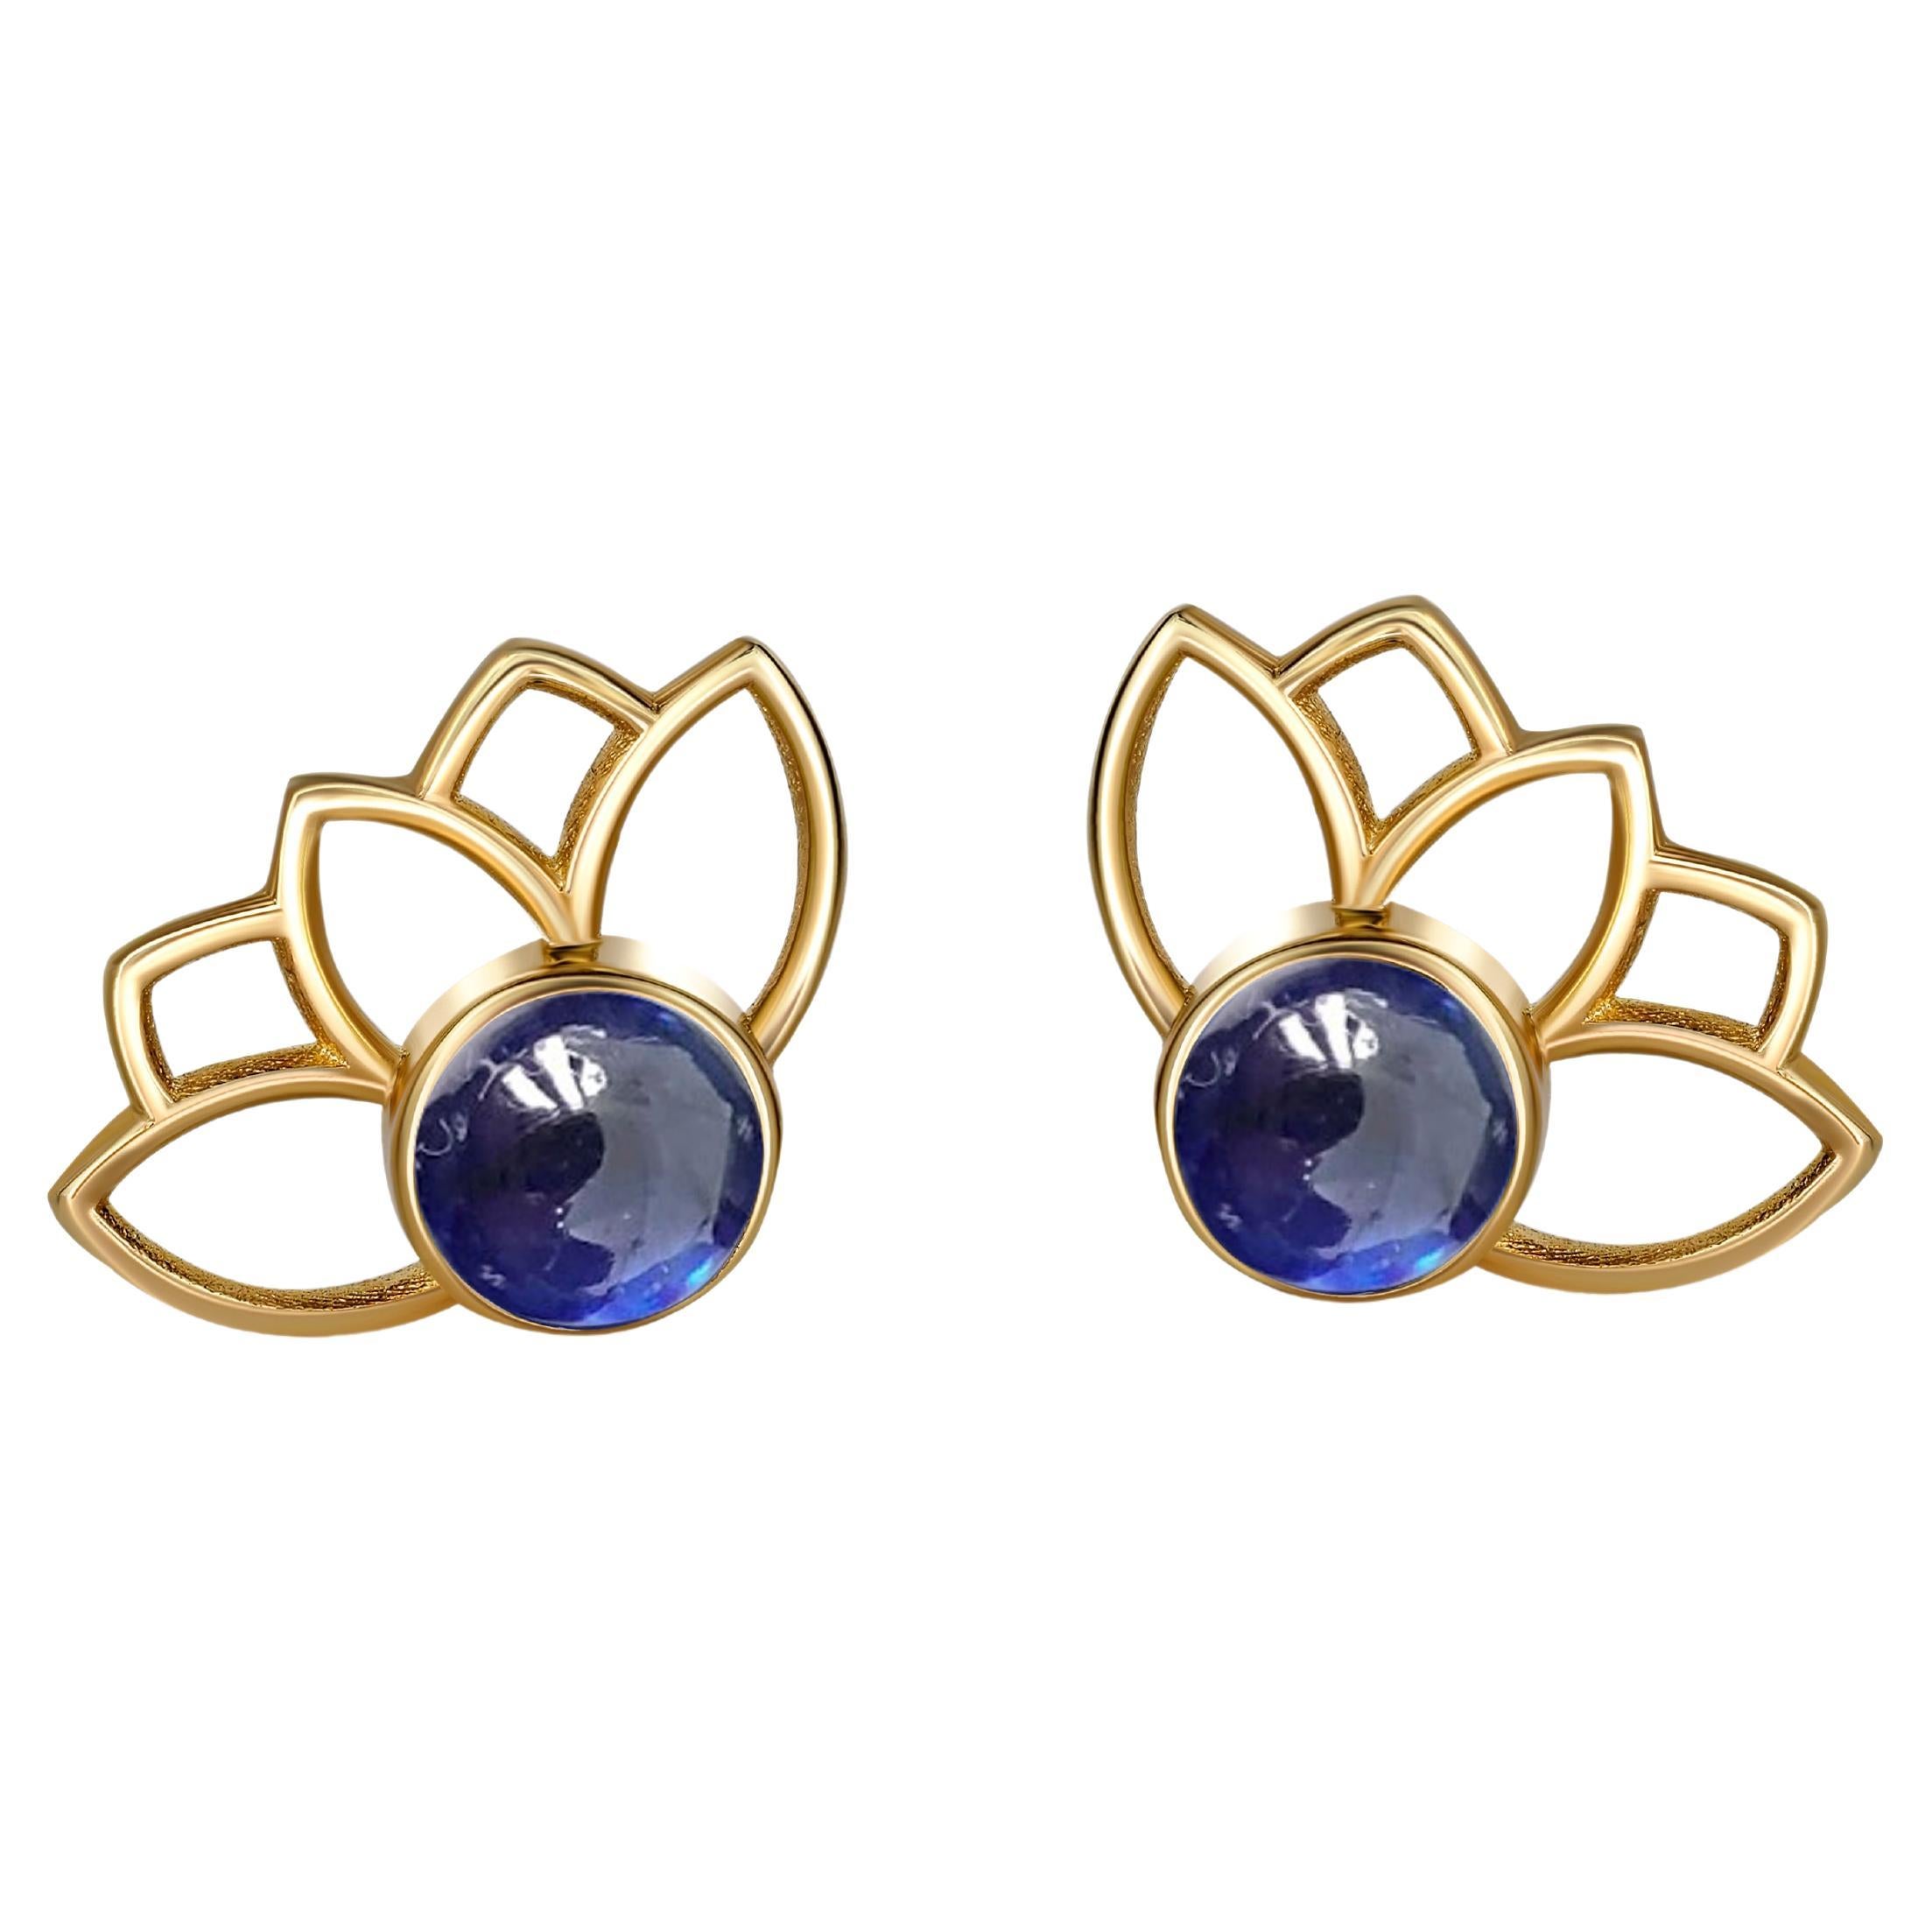 Lotus-Ohrstecker mit Saphiren aus 14k Gold. Blaue Saphir-Ohrringe aus Gold